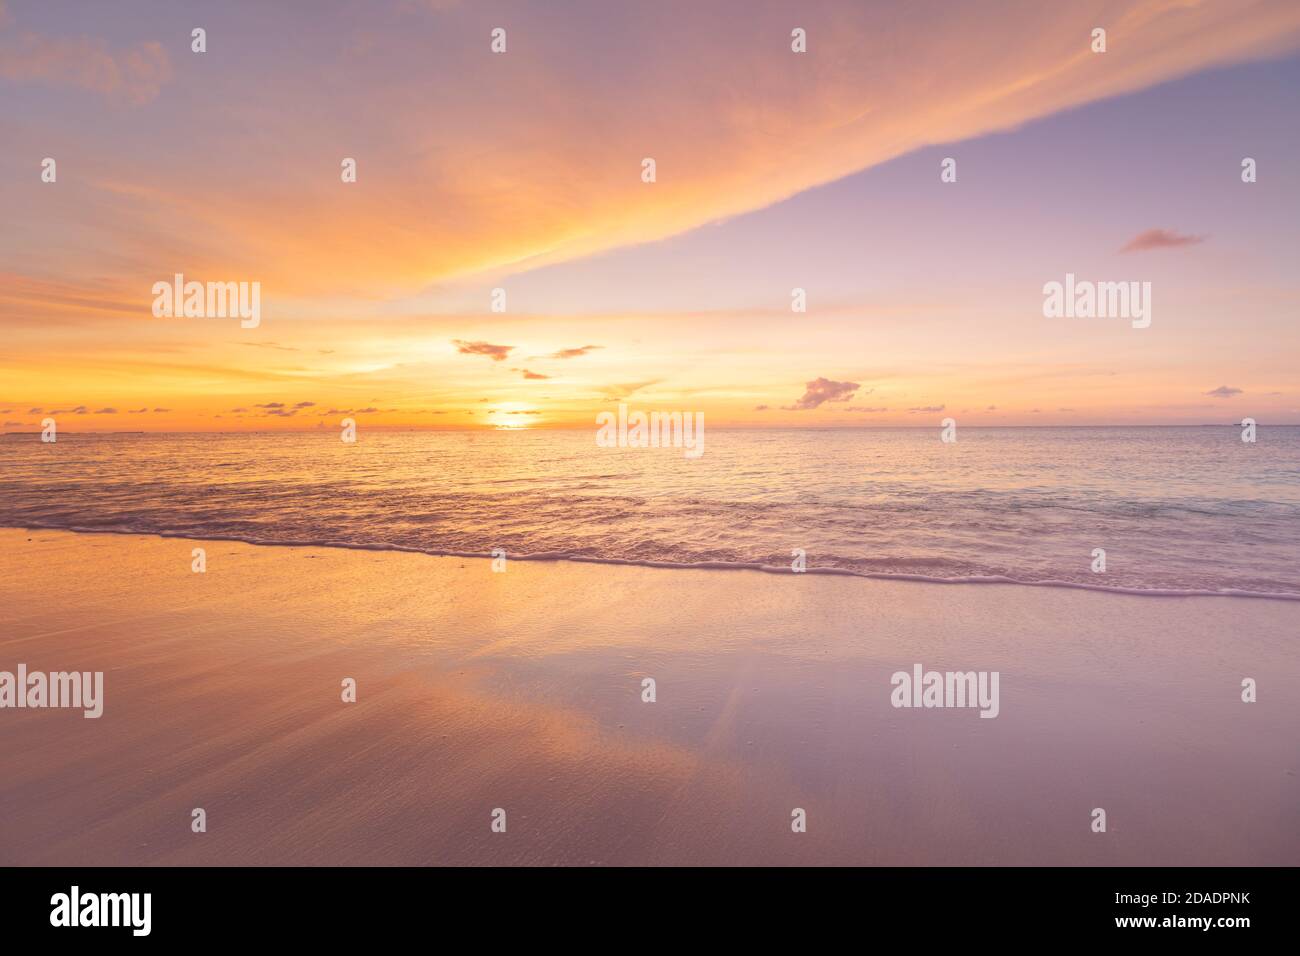 Magnifique coucher de soleil sur la plage et la mer. Plage tropicale au beau coucher du soleil. Arrière-plan de la nature. Paysage exotique, littoral, côte, vagues calmes, sable doux Banque D'Images